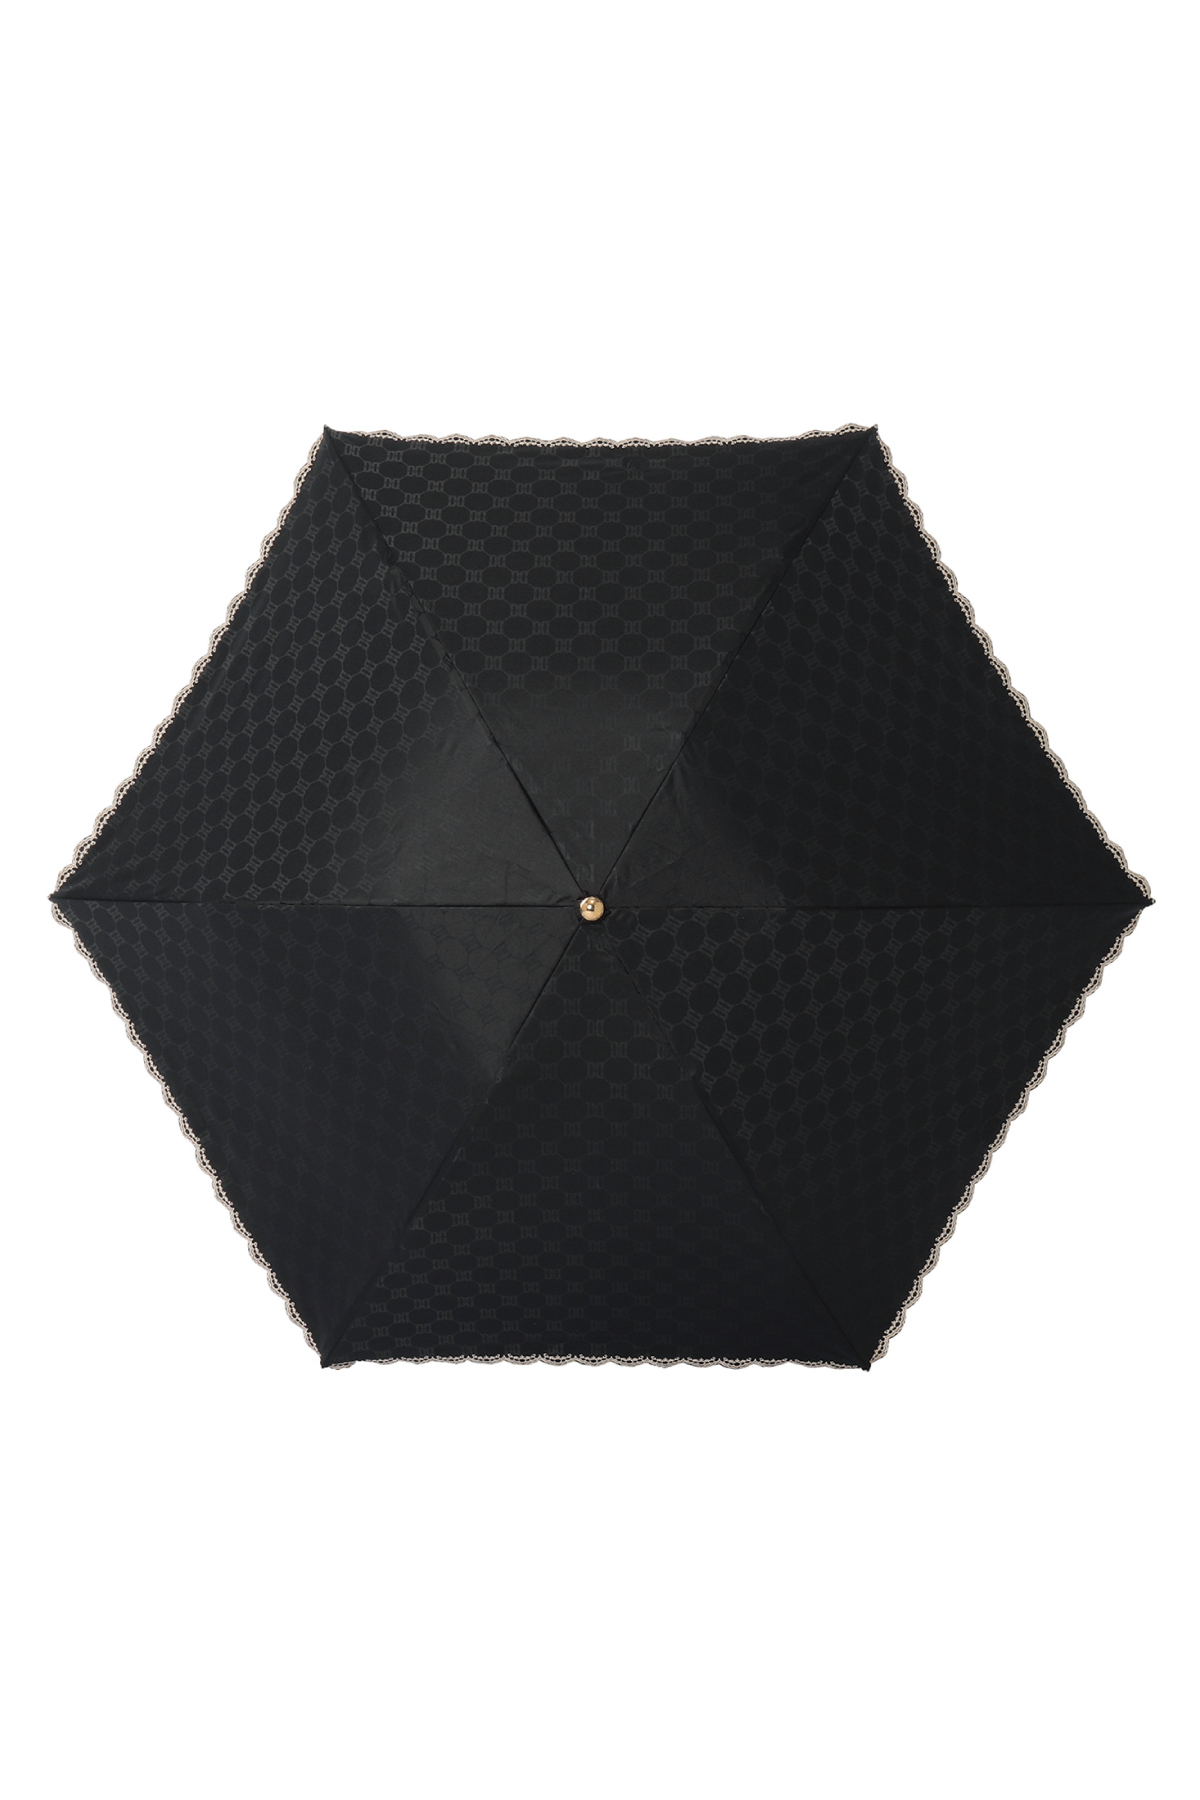 【日傘】ミニ折りたたみ傘ロゴジャカード刺繍 詳細画像 2